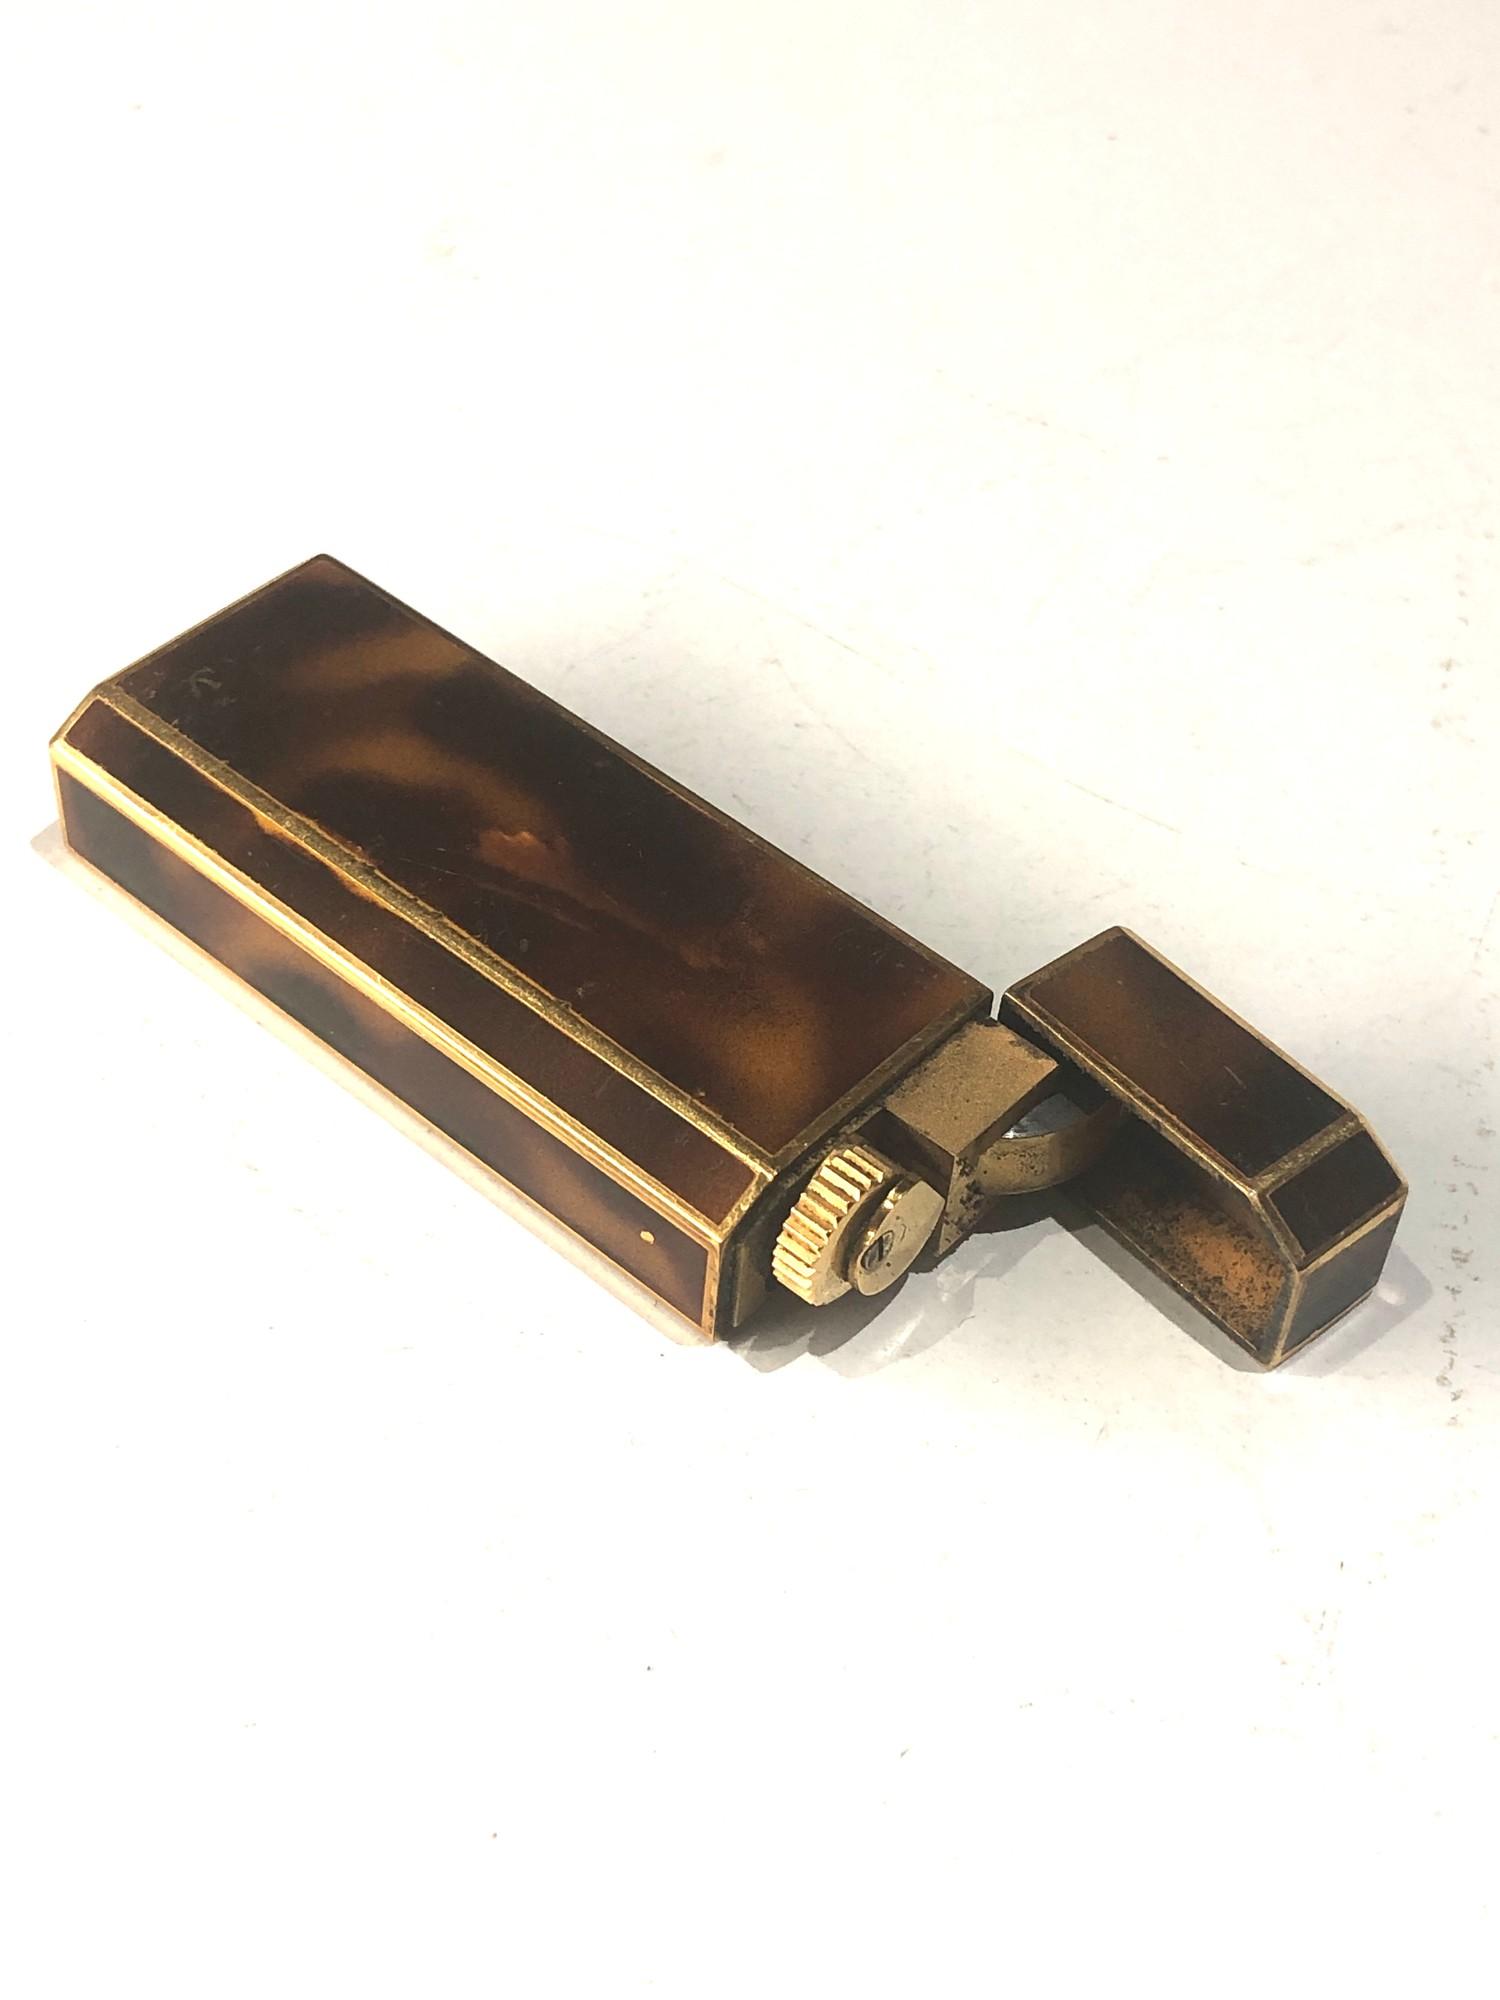 Vintage Cartier lighter - Image 3 of 3